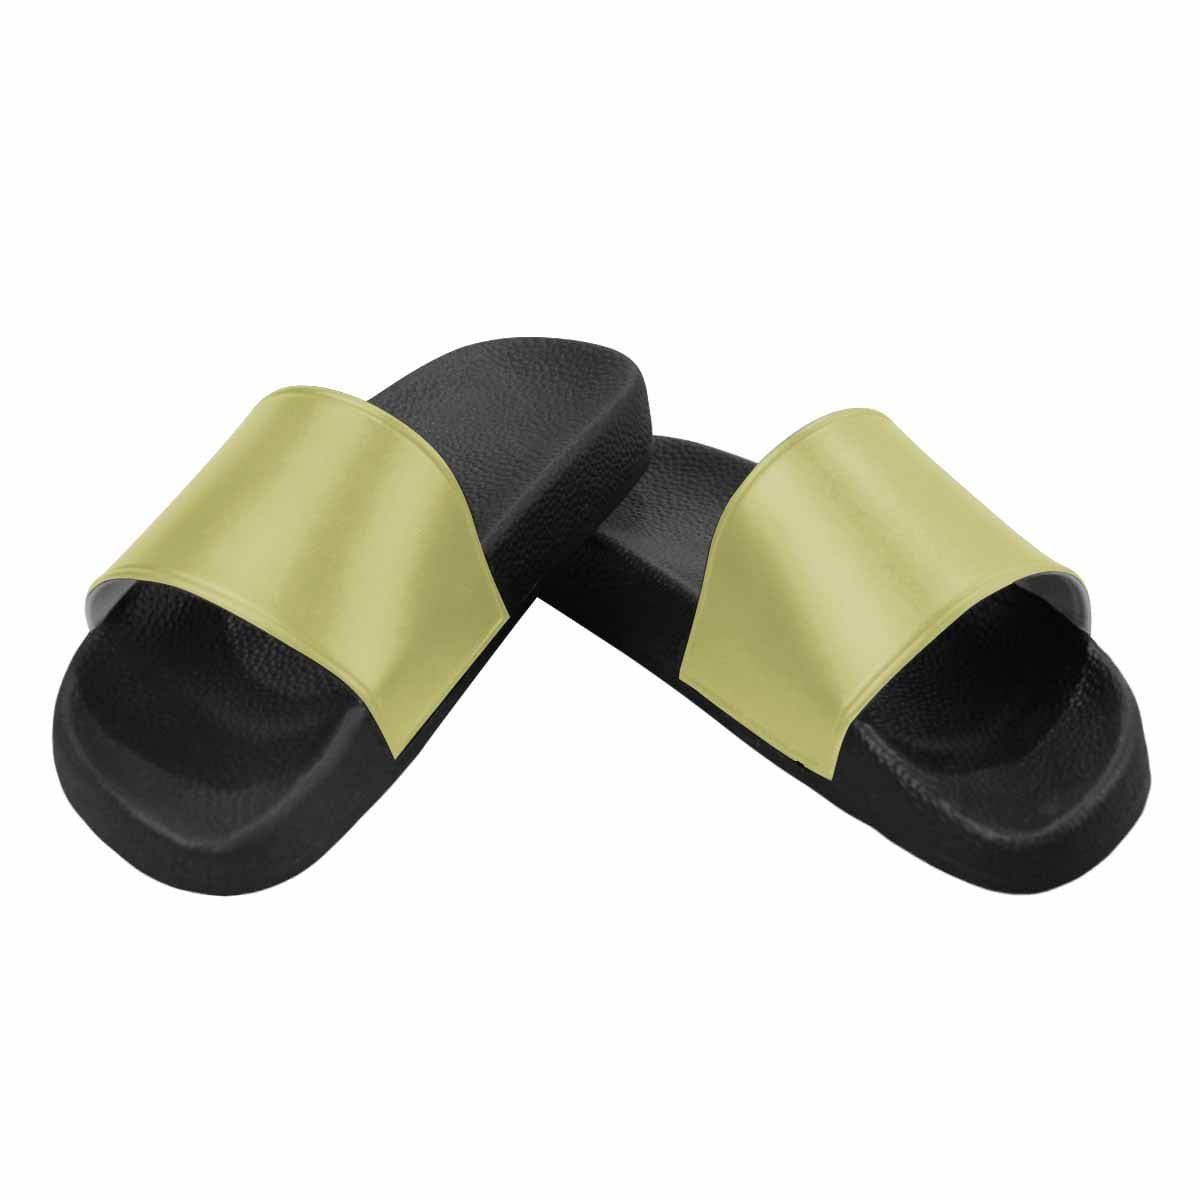 Mens Slide Sandals Olive Green Flip Flops - Mens | Slides